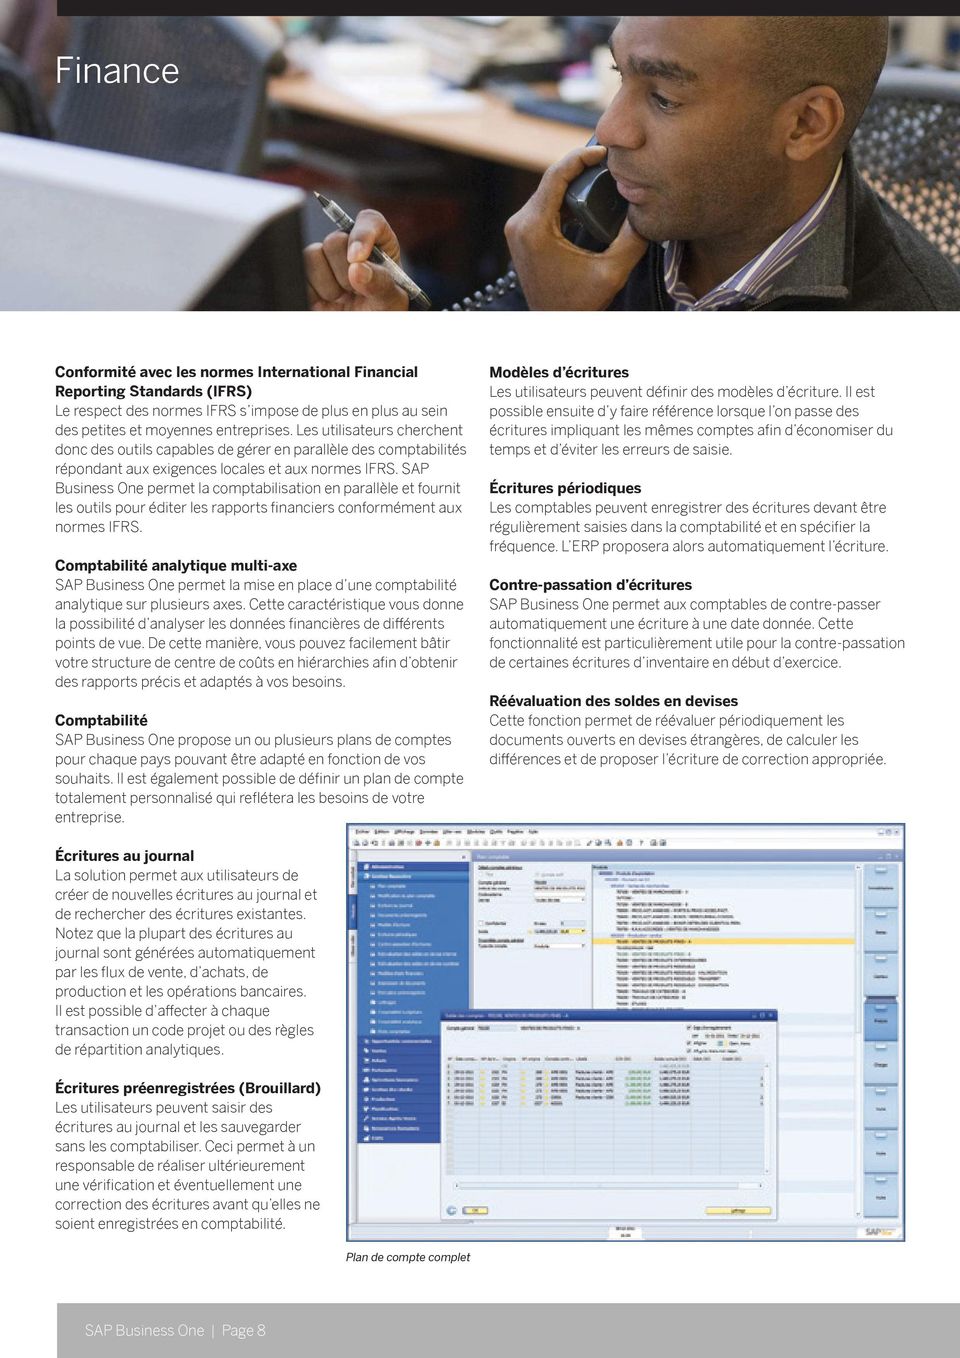 SAP Business One permet la comptabilisation en parallèle et fournit les outils pour éditer les rapports financiers conformément aux normes IFRS.